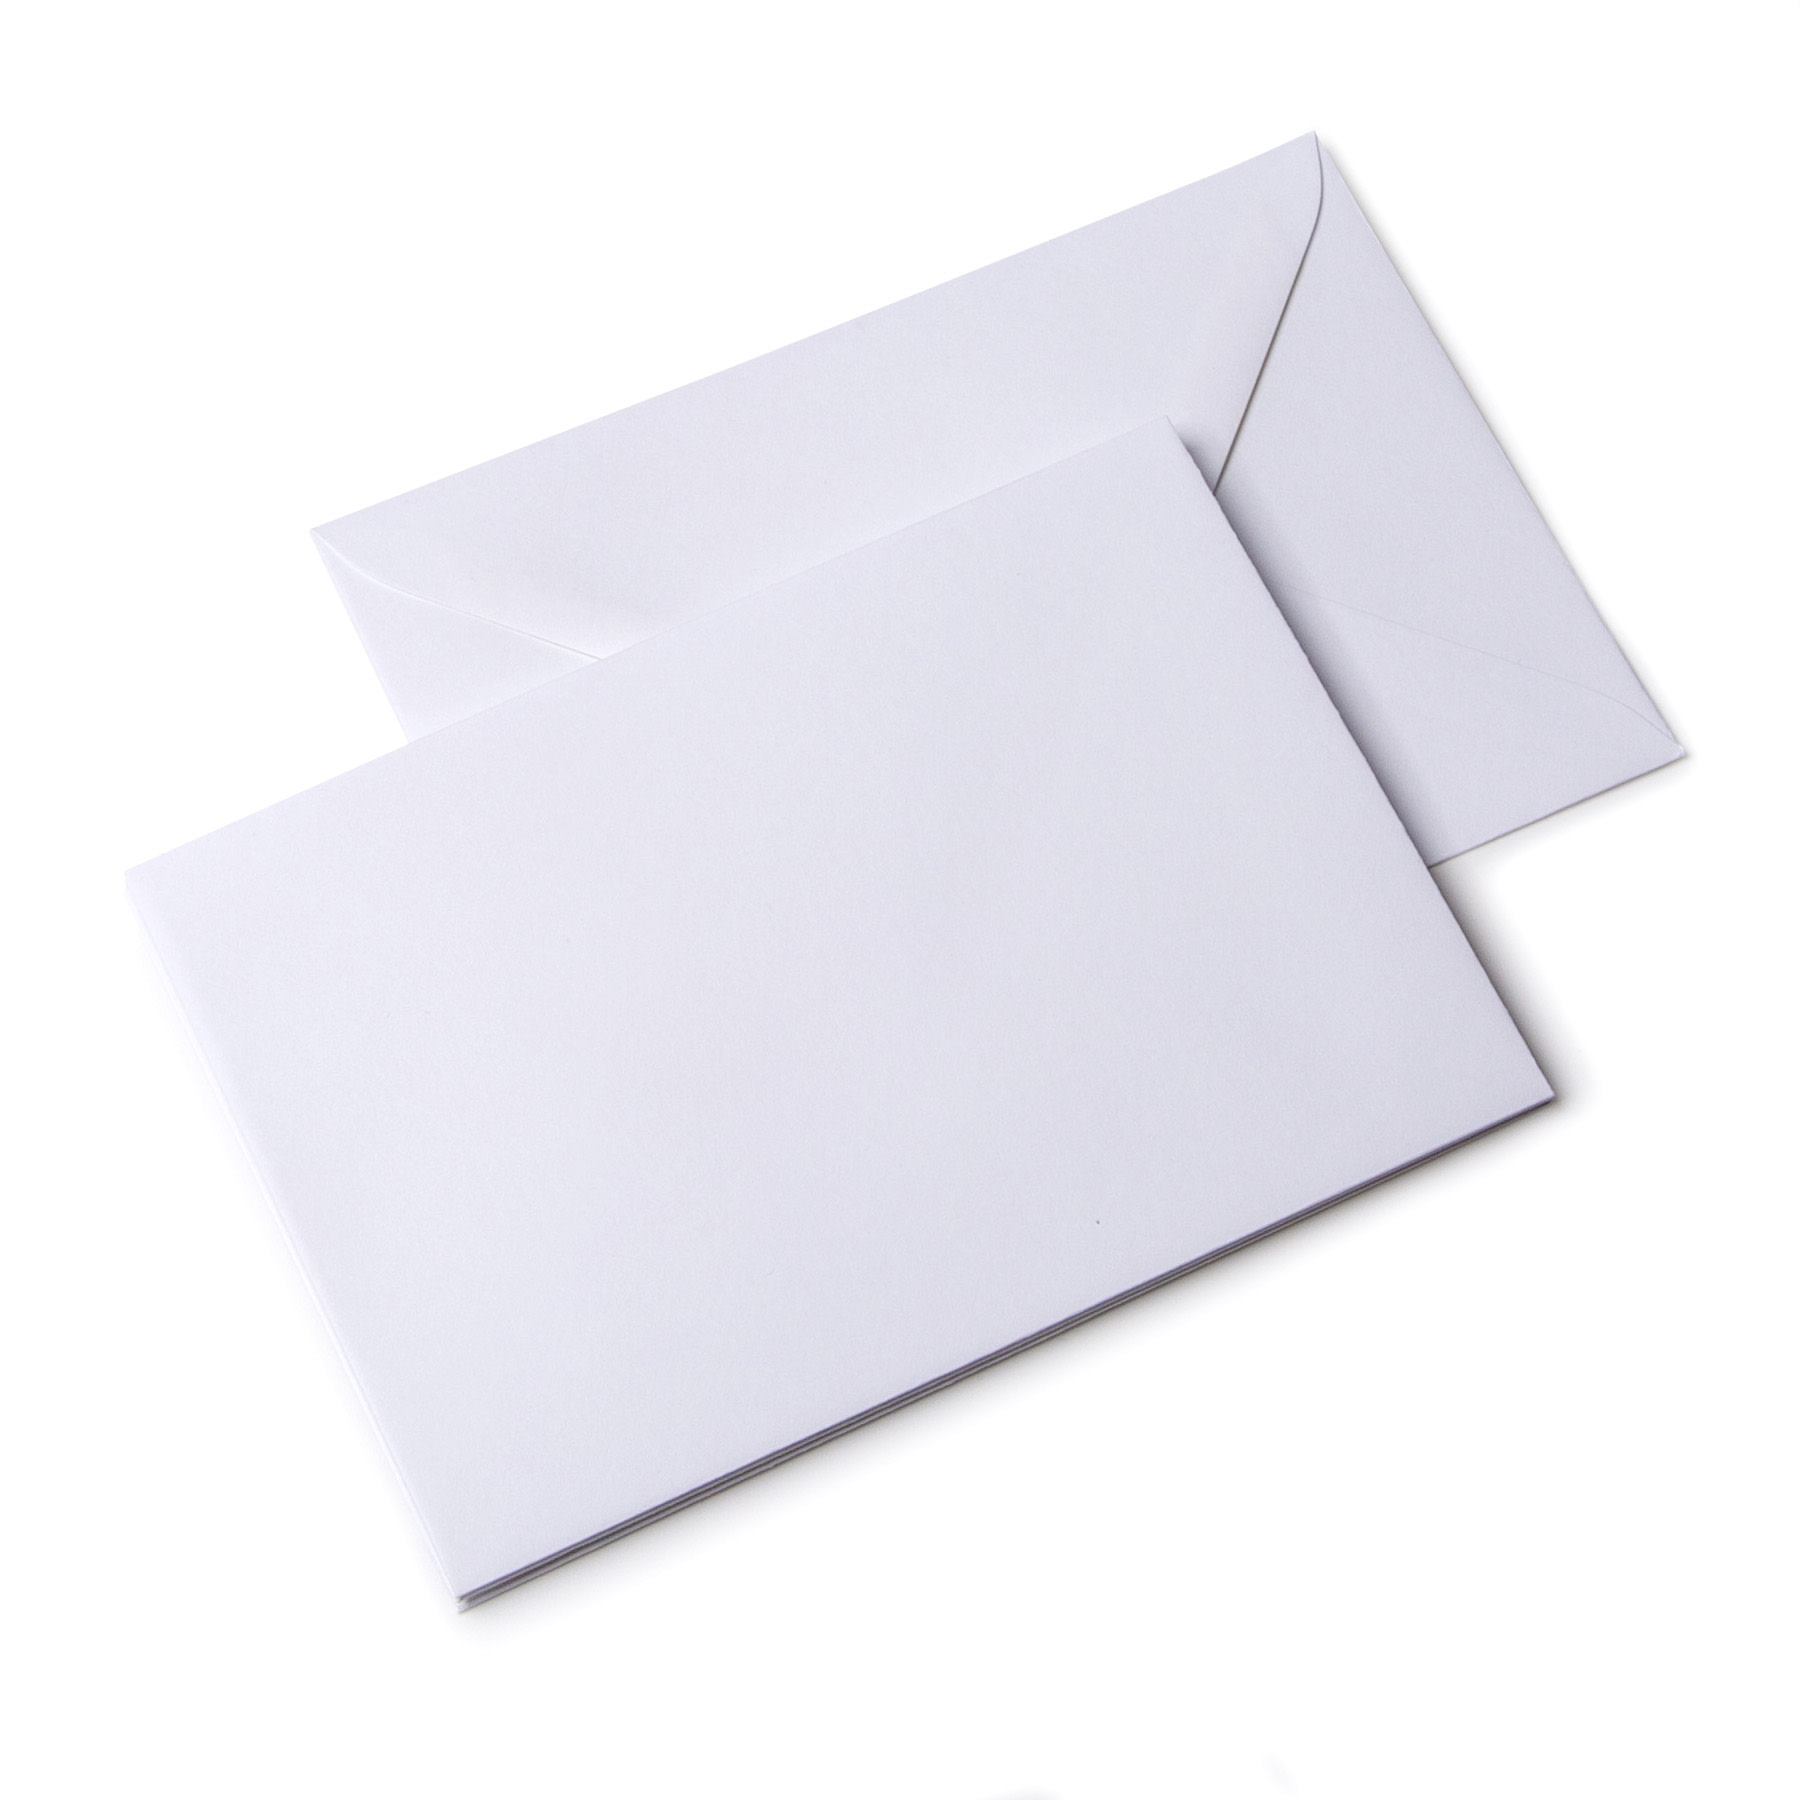 Verlichten veel plezier dun Goedkoop enveloppen bestellen | Snel | Drukwerkdeal.nl